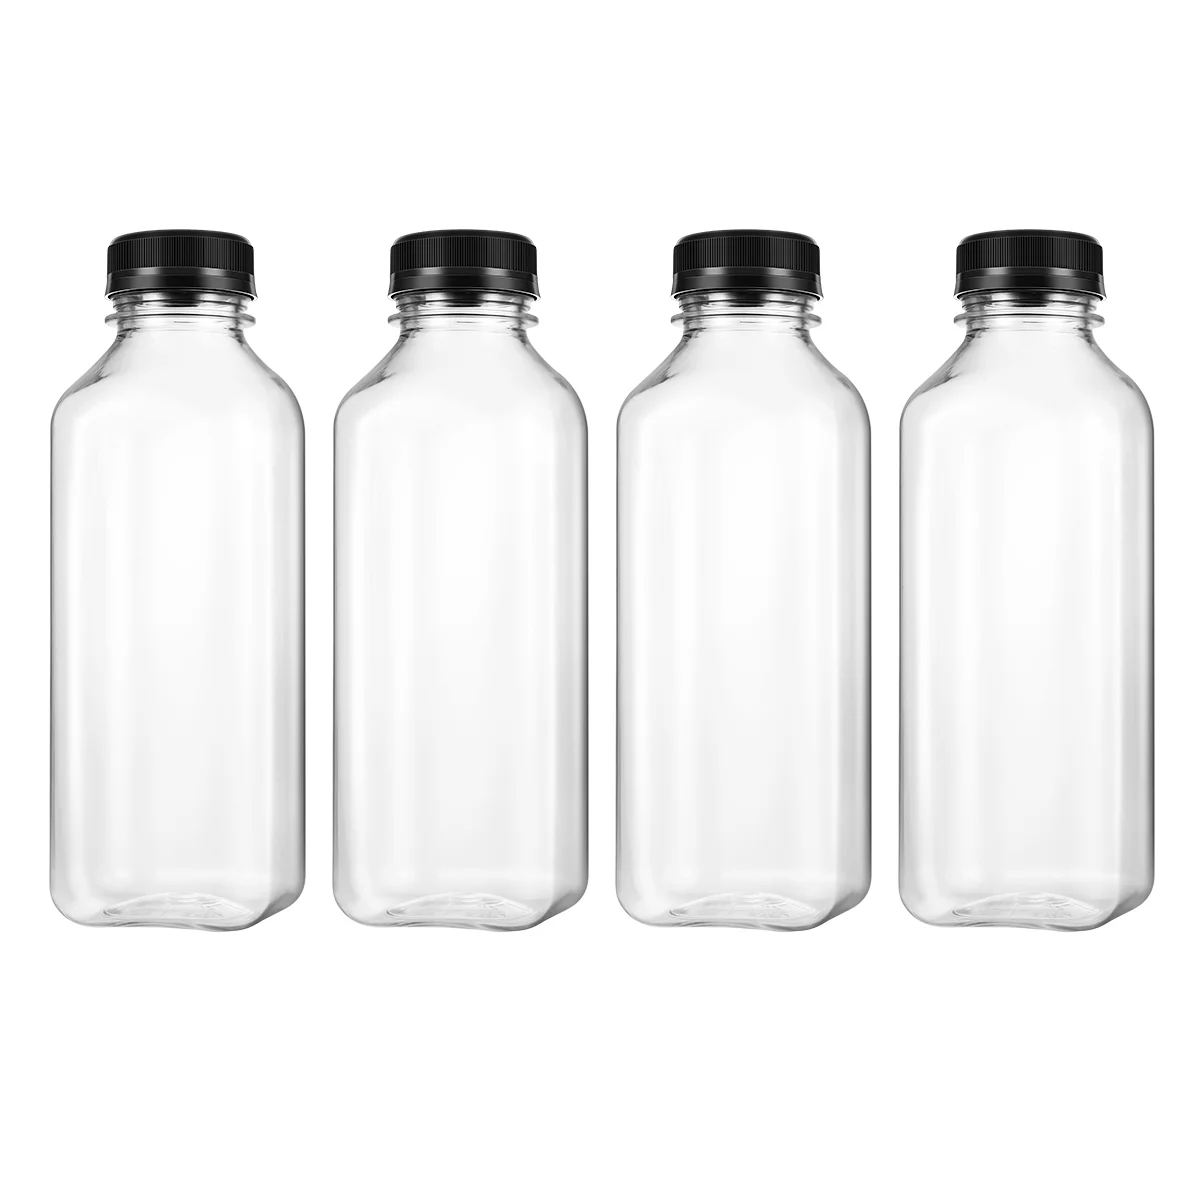 

UKCOCO 4PCS PET Plastic Empty Storage Containers Bottles with Lids Caps Beverage Drink Bottle Juice Bottle Jar (Black Caps)